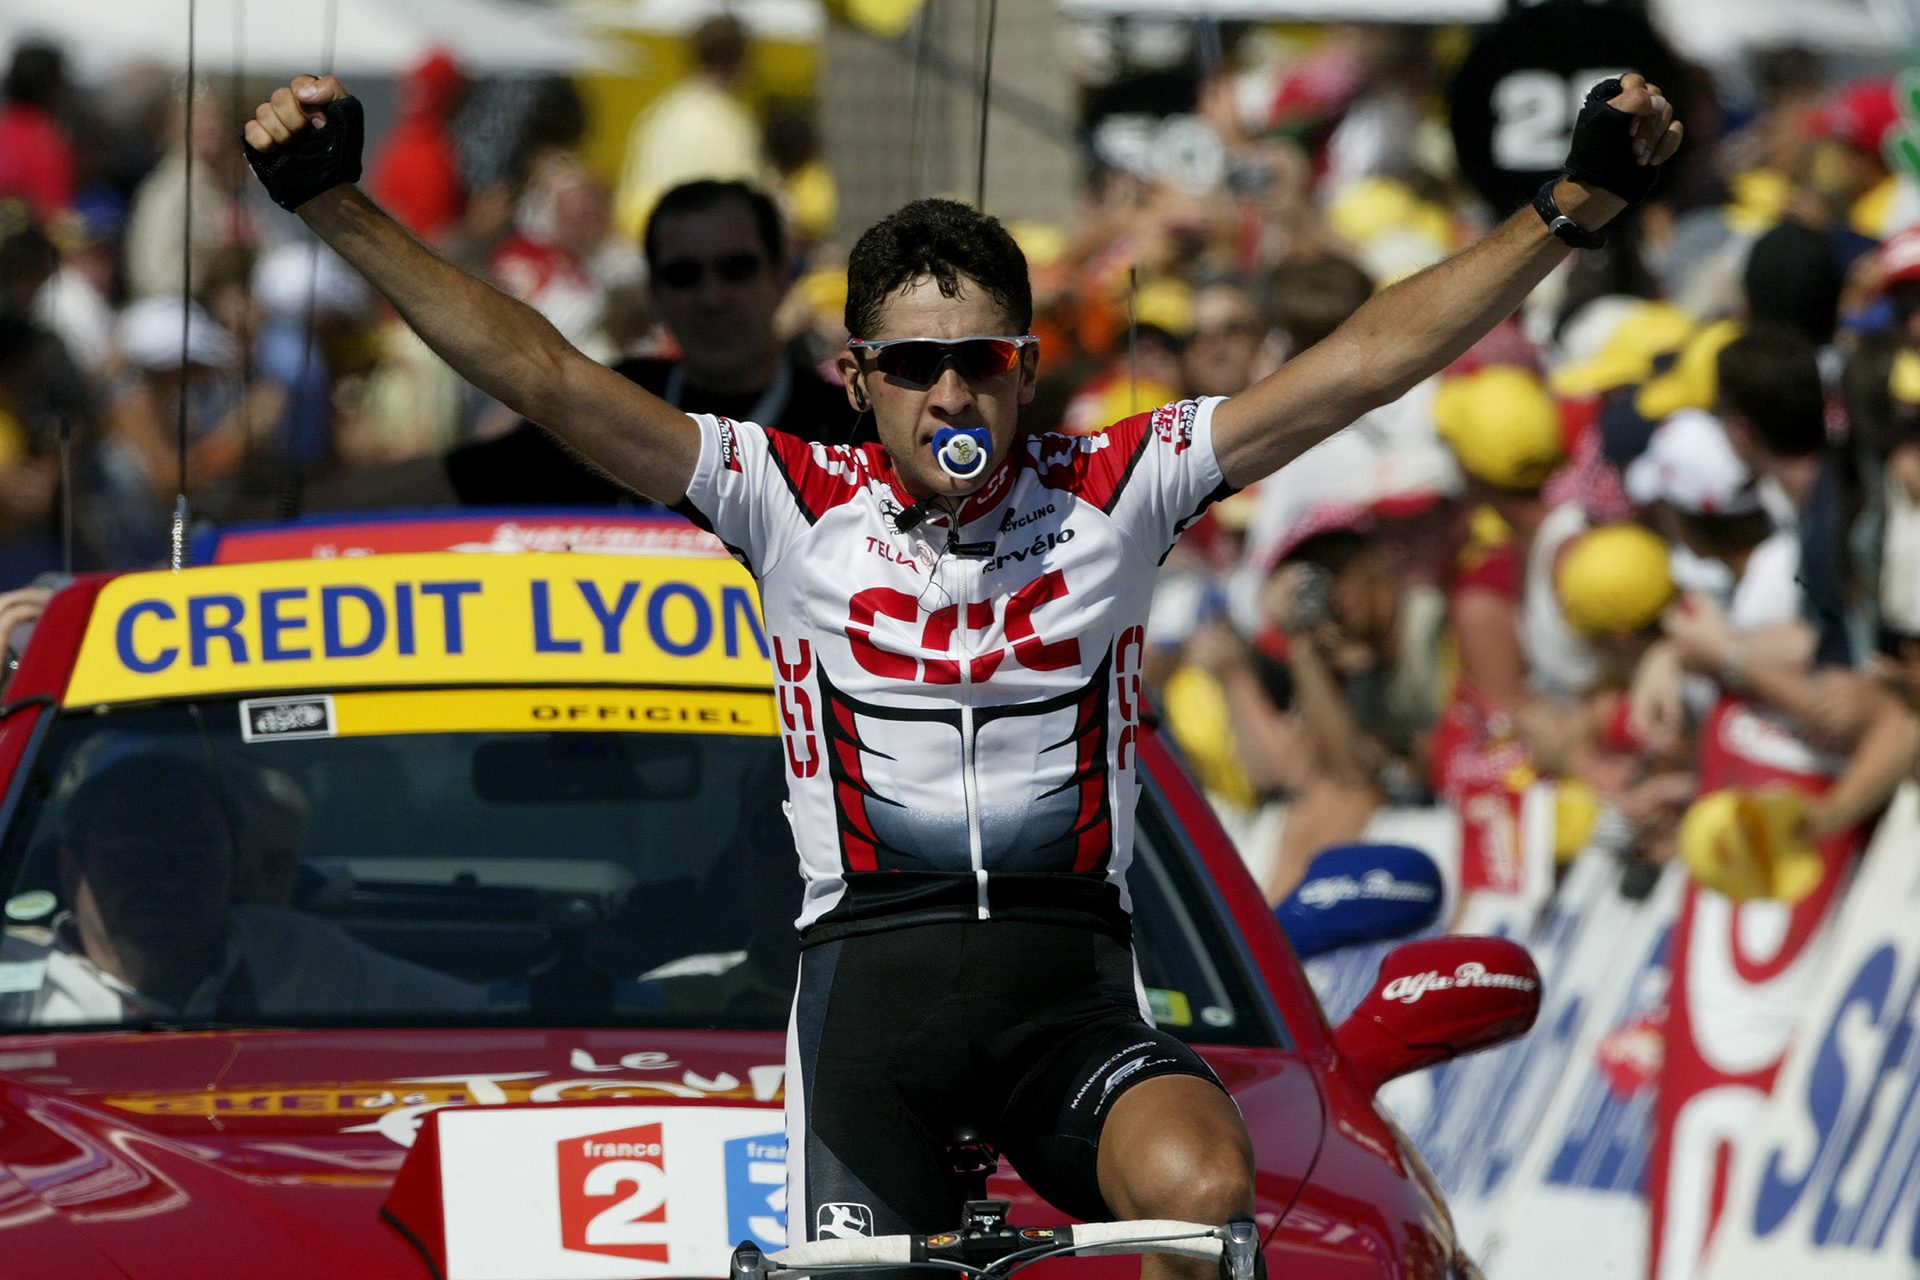 Sus logros en el Tour de Francia antes de su gran victoria